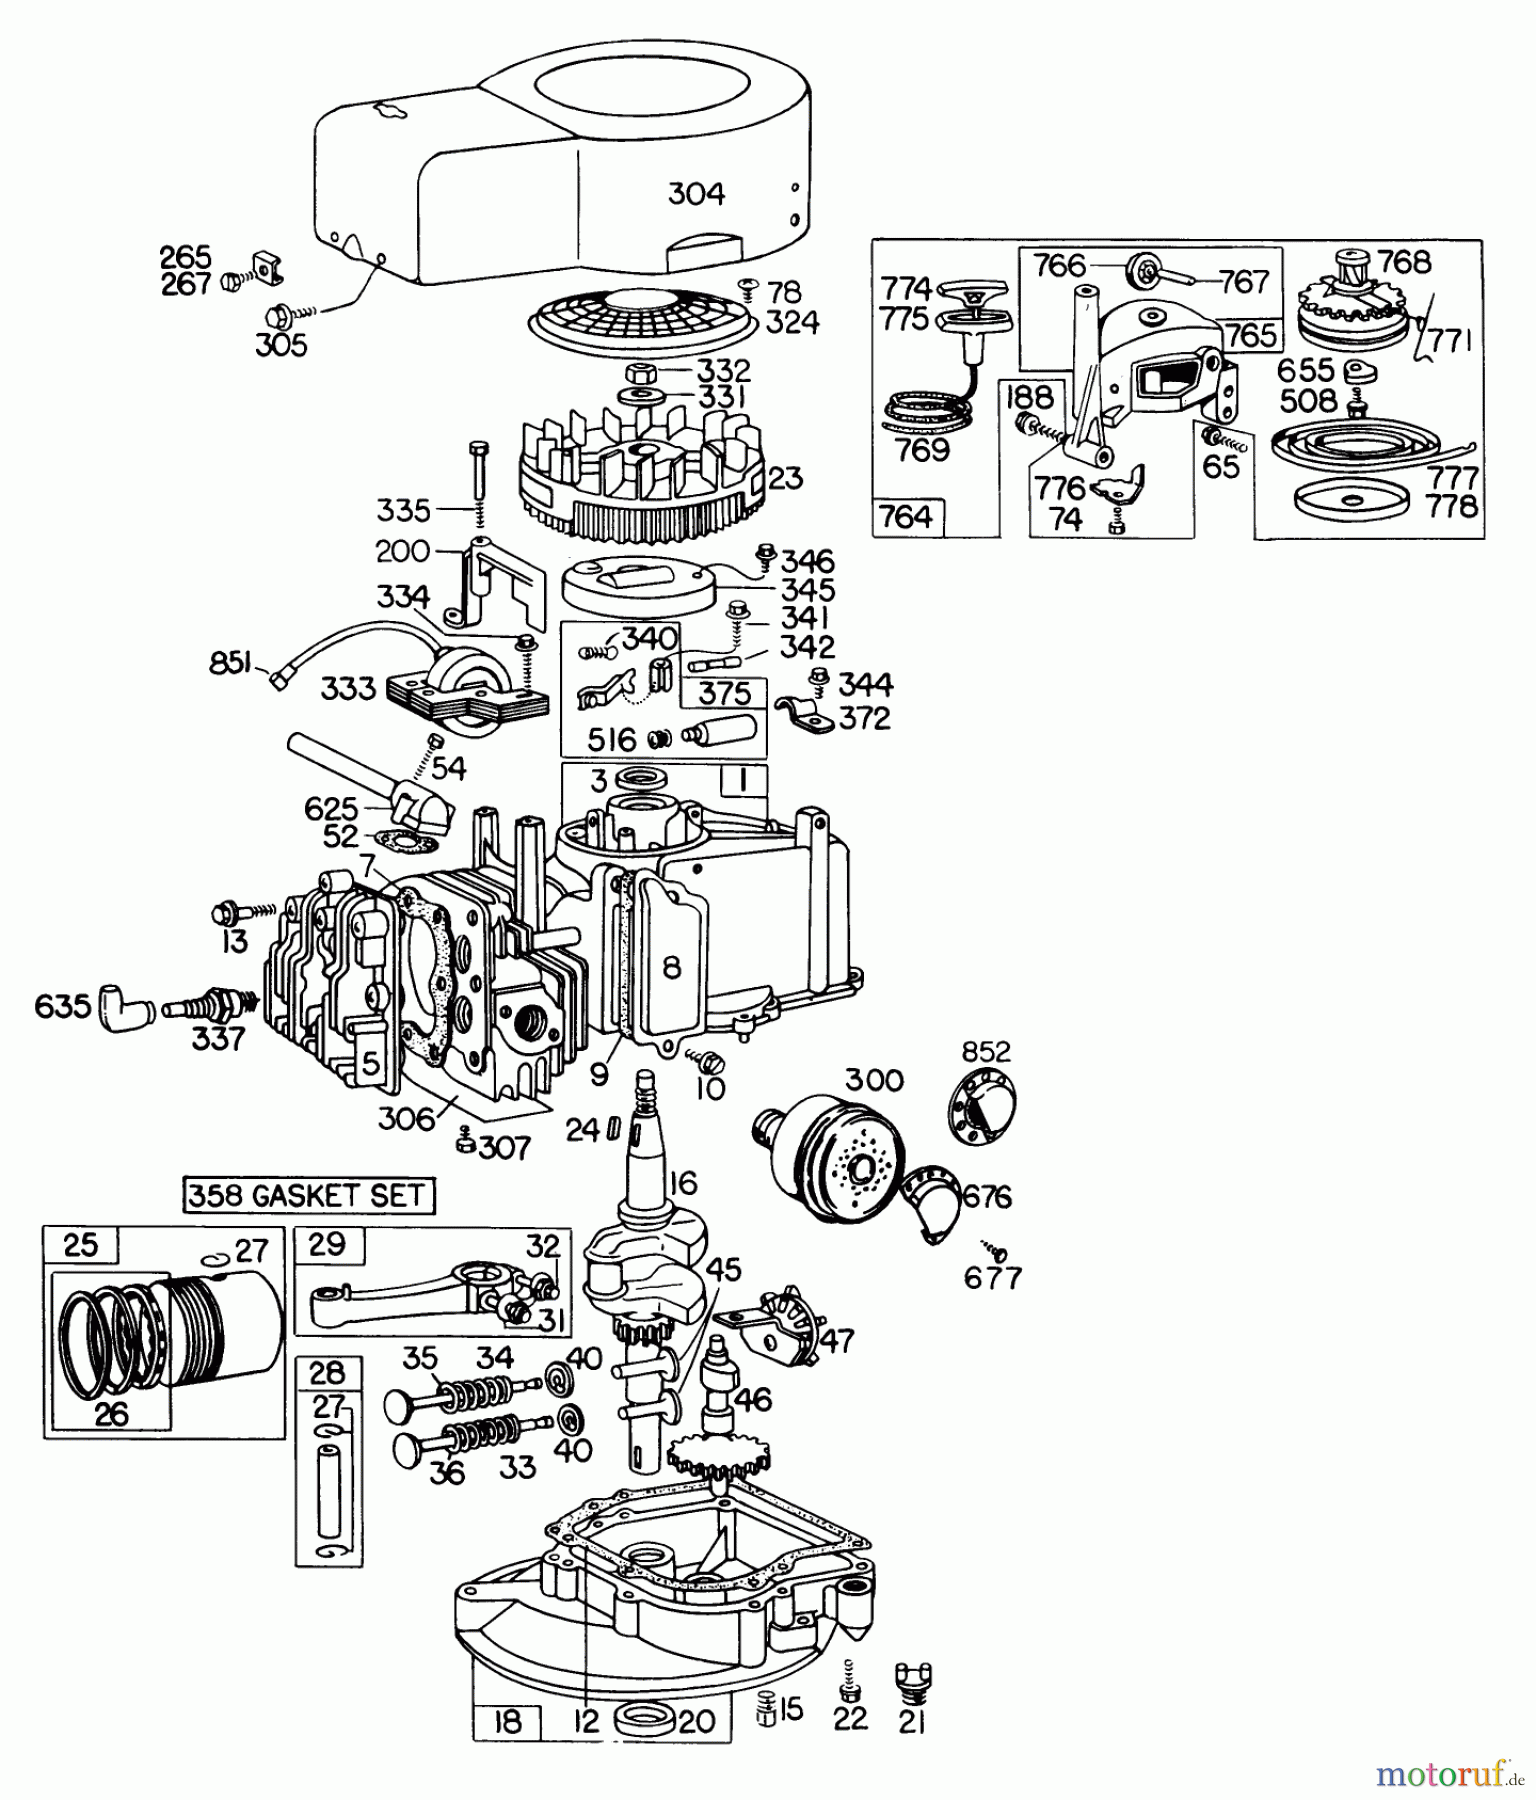  Toro Neu Mowers, Walk-Behind Seite 2 23333 - Toro Lawnmower, 1978 (8000001-8999999) ENGINE BRIGGS & STRATTON MODEL 110908-0380-01 #2